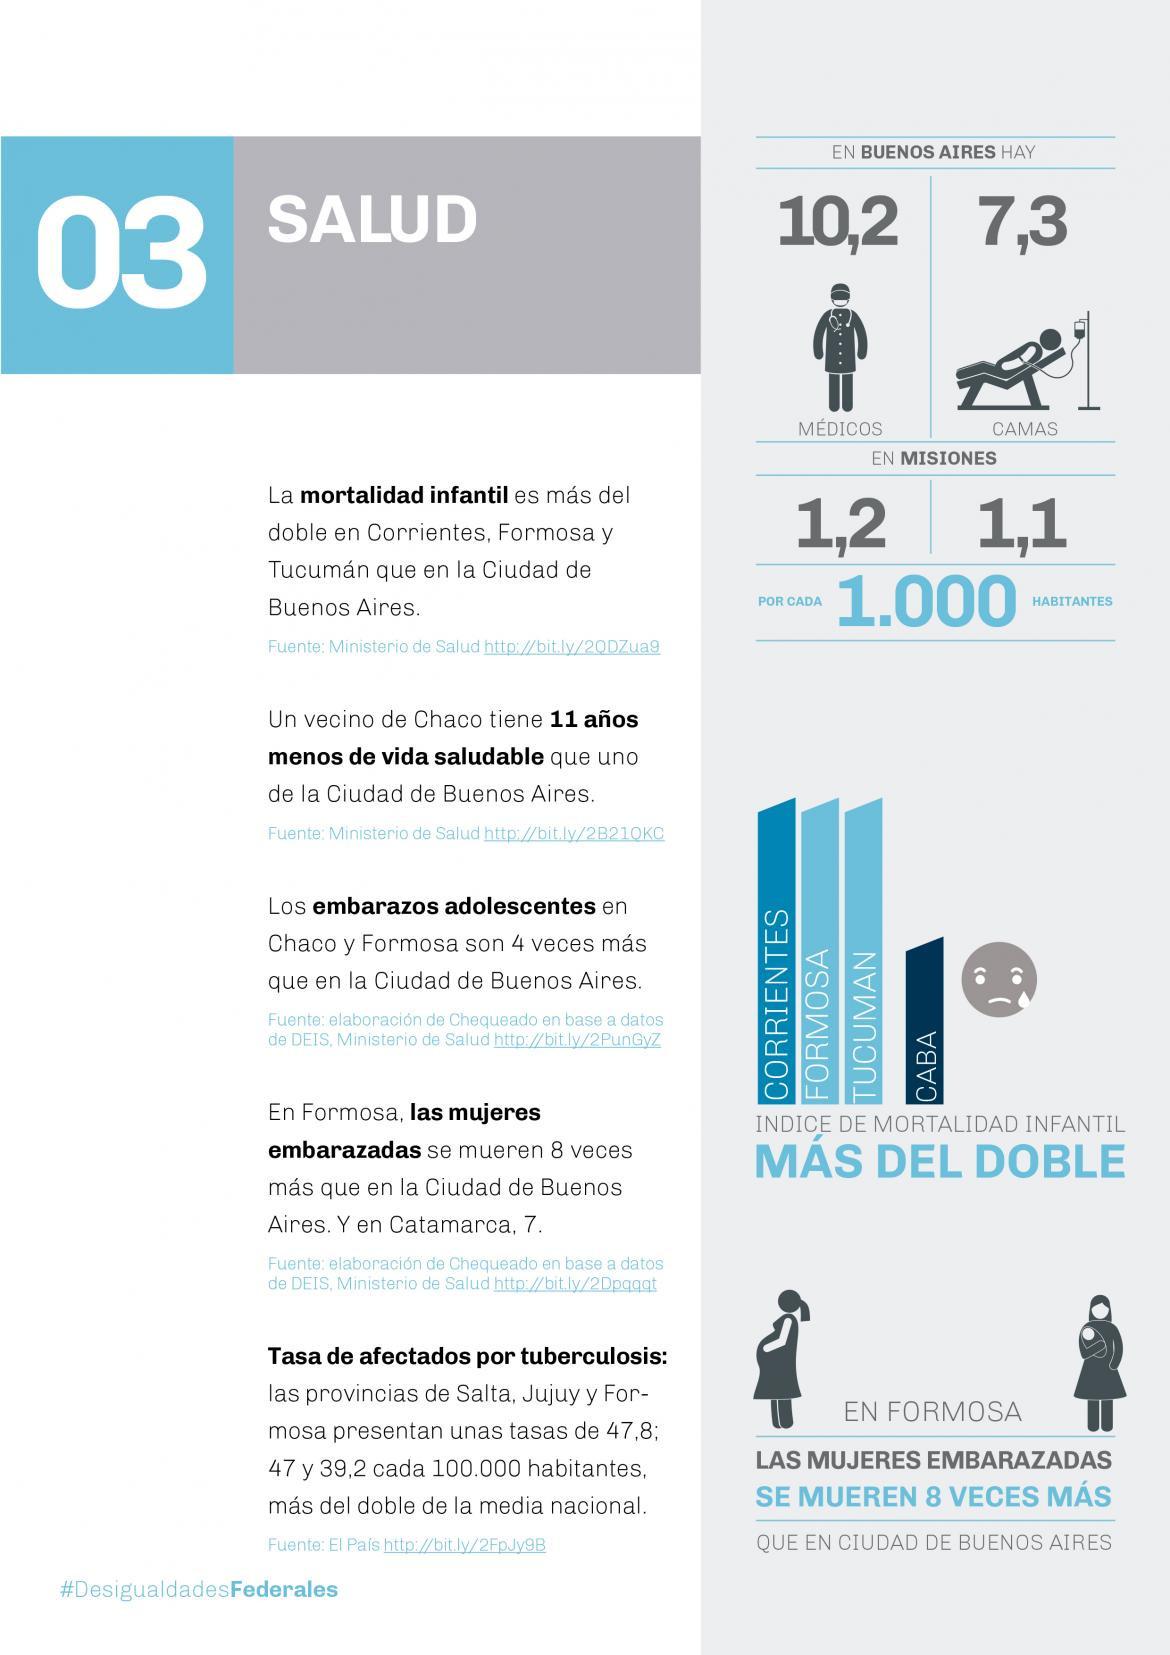 El Frente Renovador presentó un informe sobre desigualdades territoriales en la Argentina